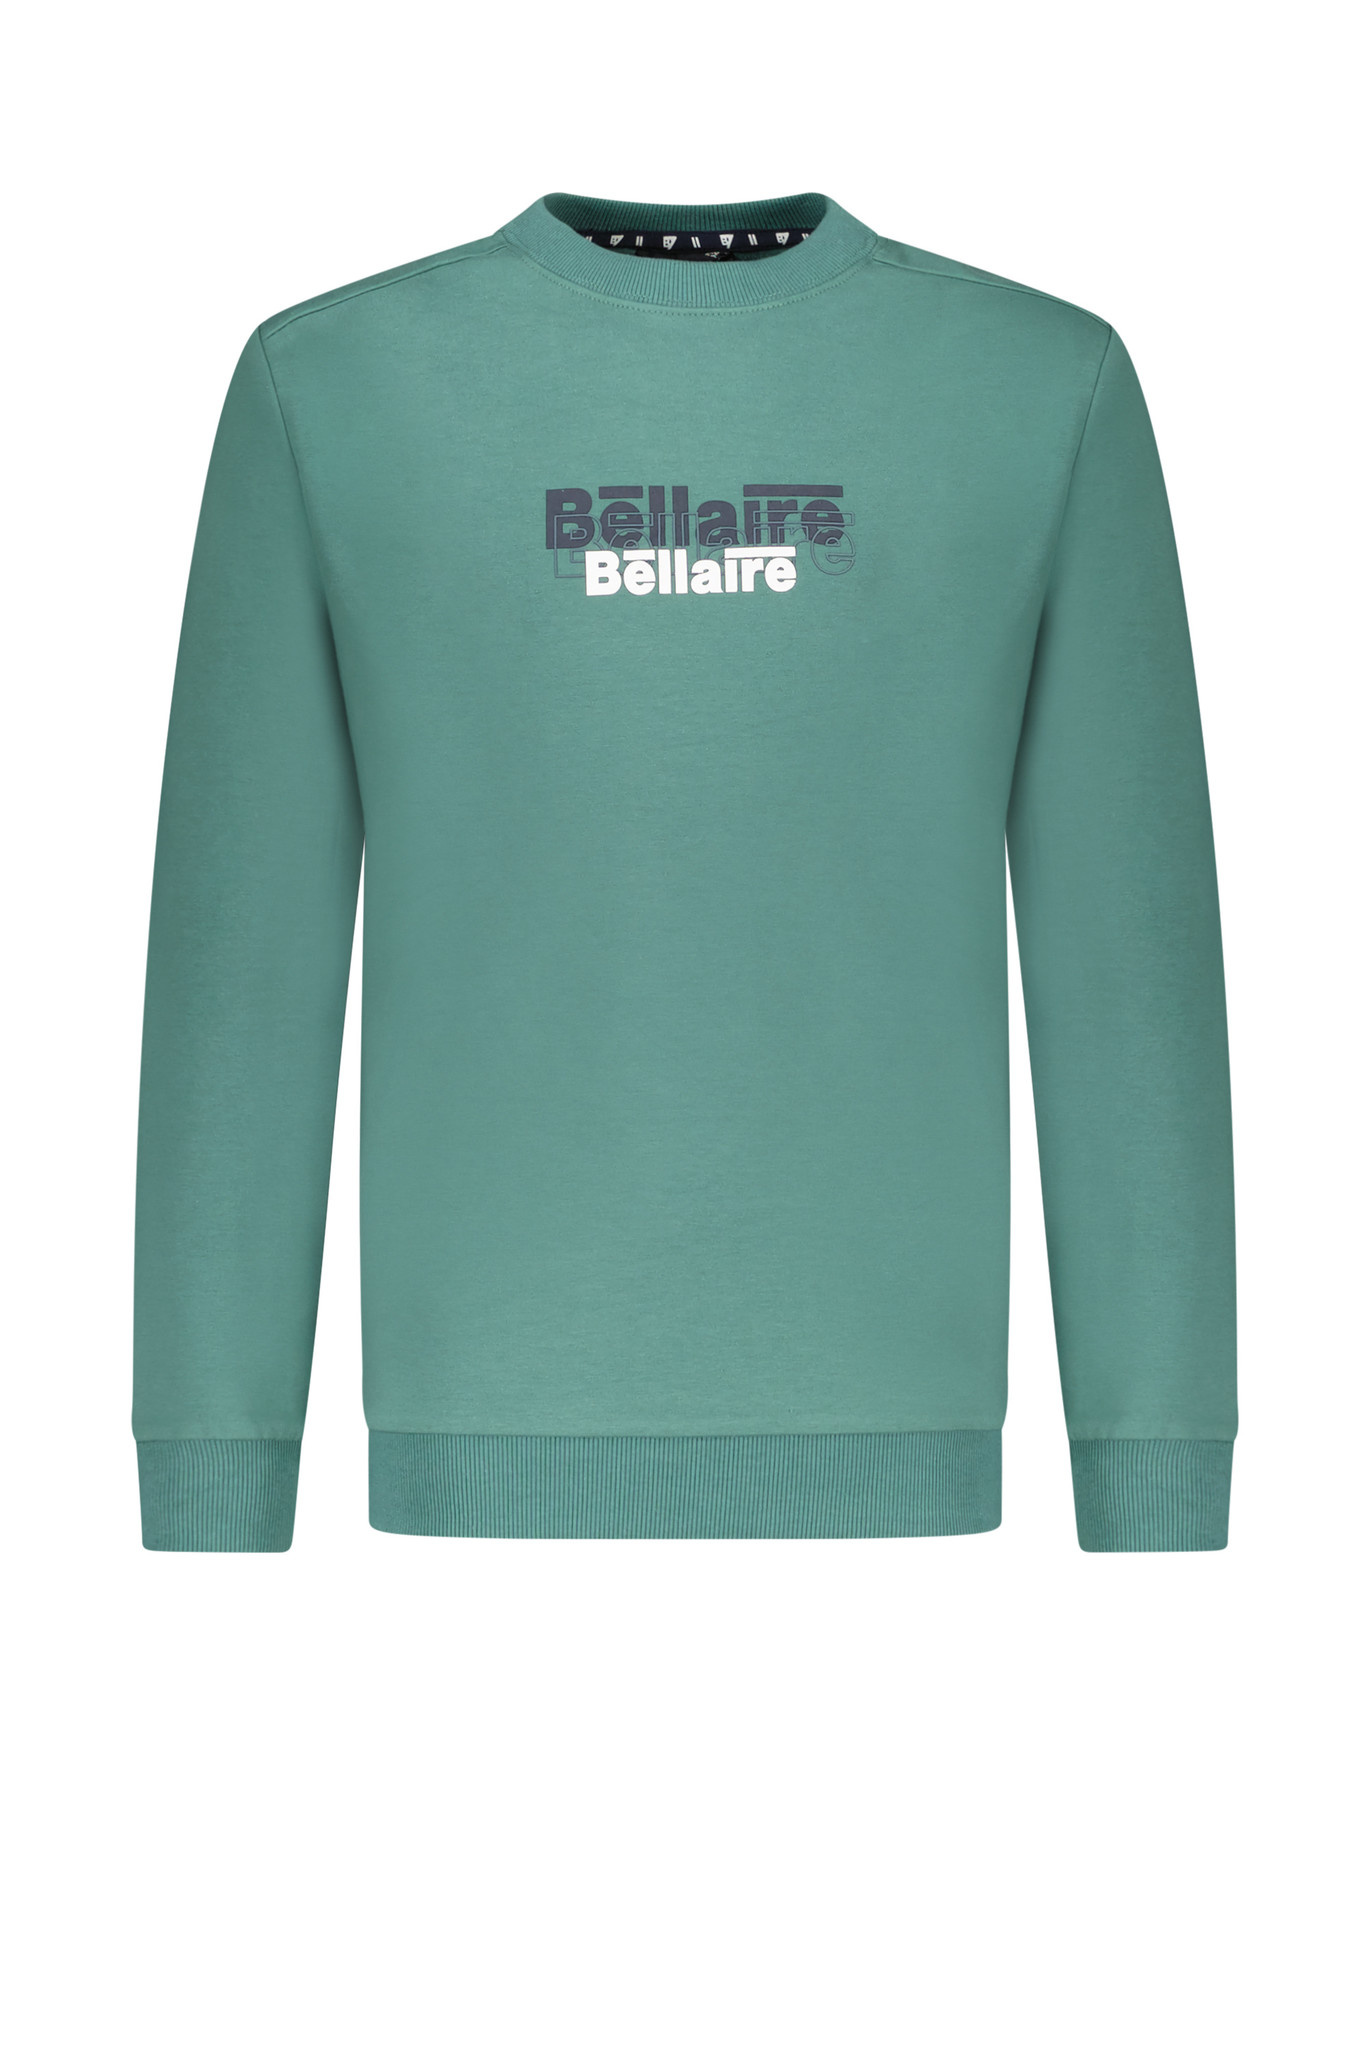 Bellaire jongens sweater ronde nek en logo op borst Deep Sea